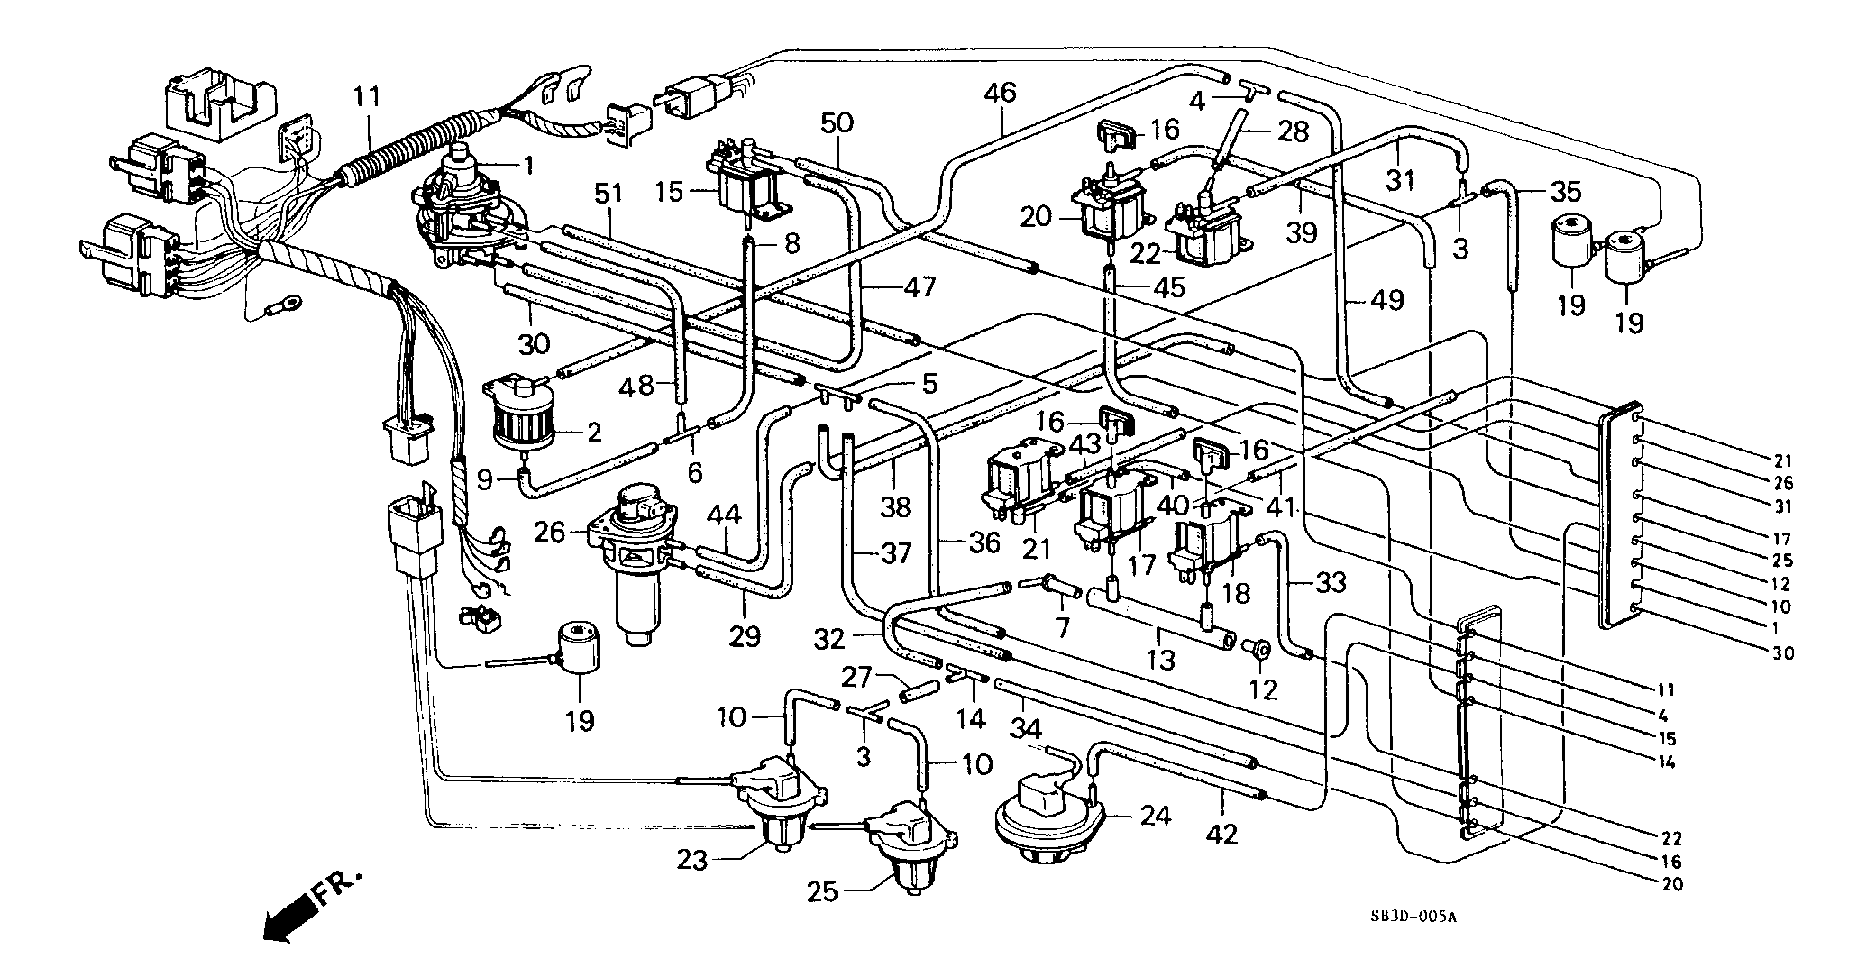 CONTROL BOX TUBING(23E)